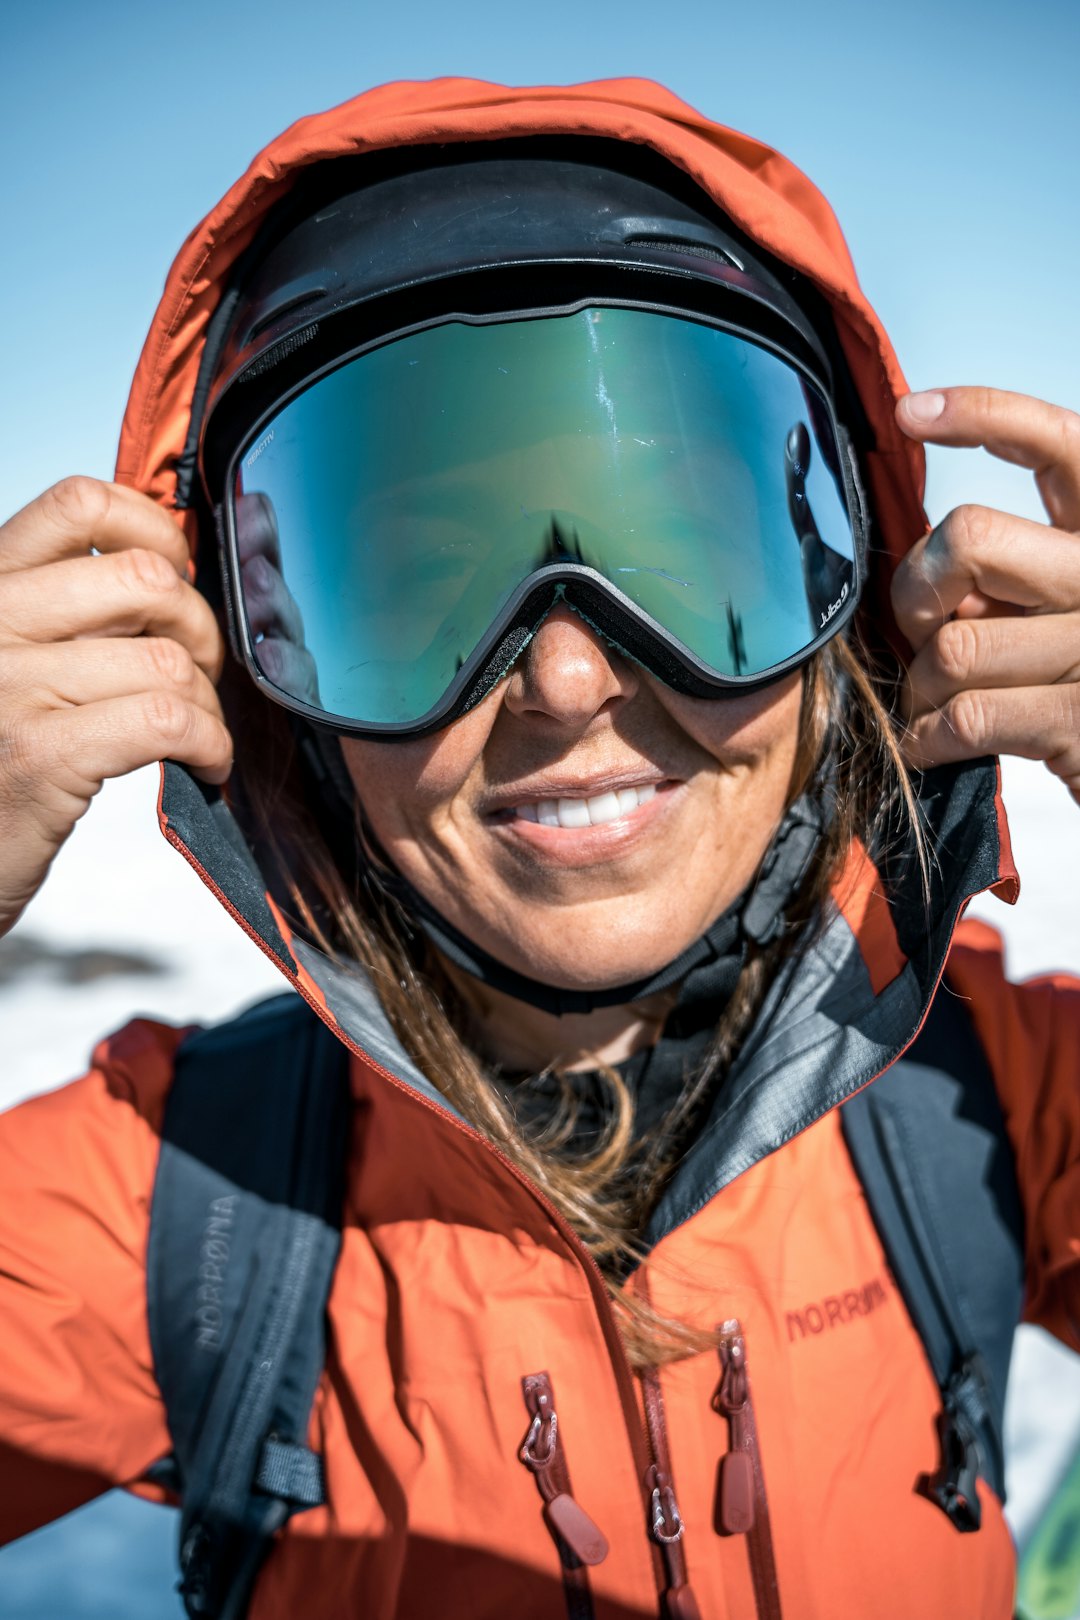 VIKTIG Å SE PROFF UT: Som fjellguide er det viktig for Sol Idland å se proff ut når hun står i fjellet. Foto: Simon Sjøkvist